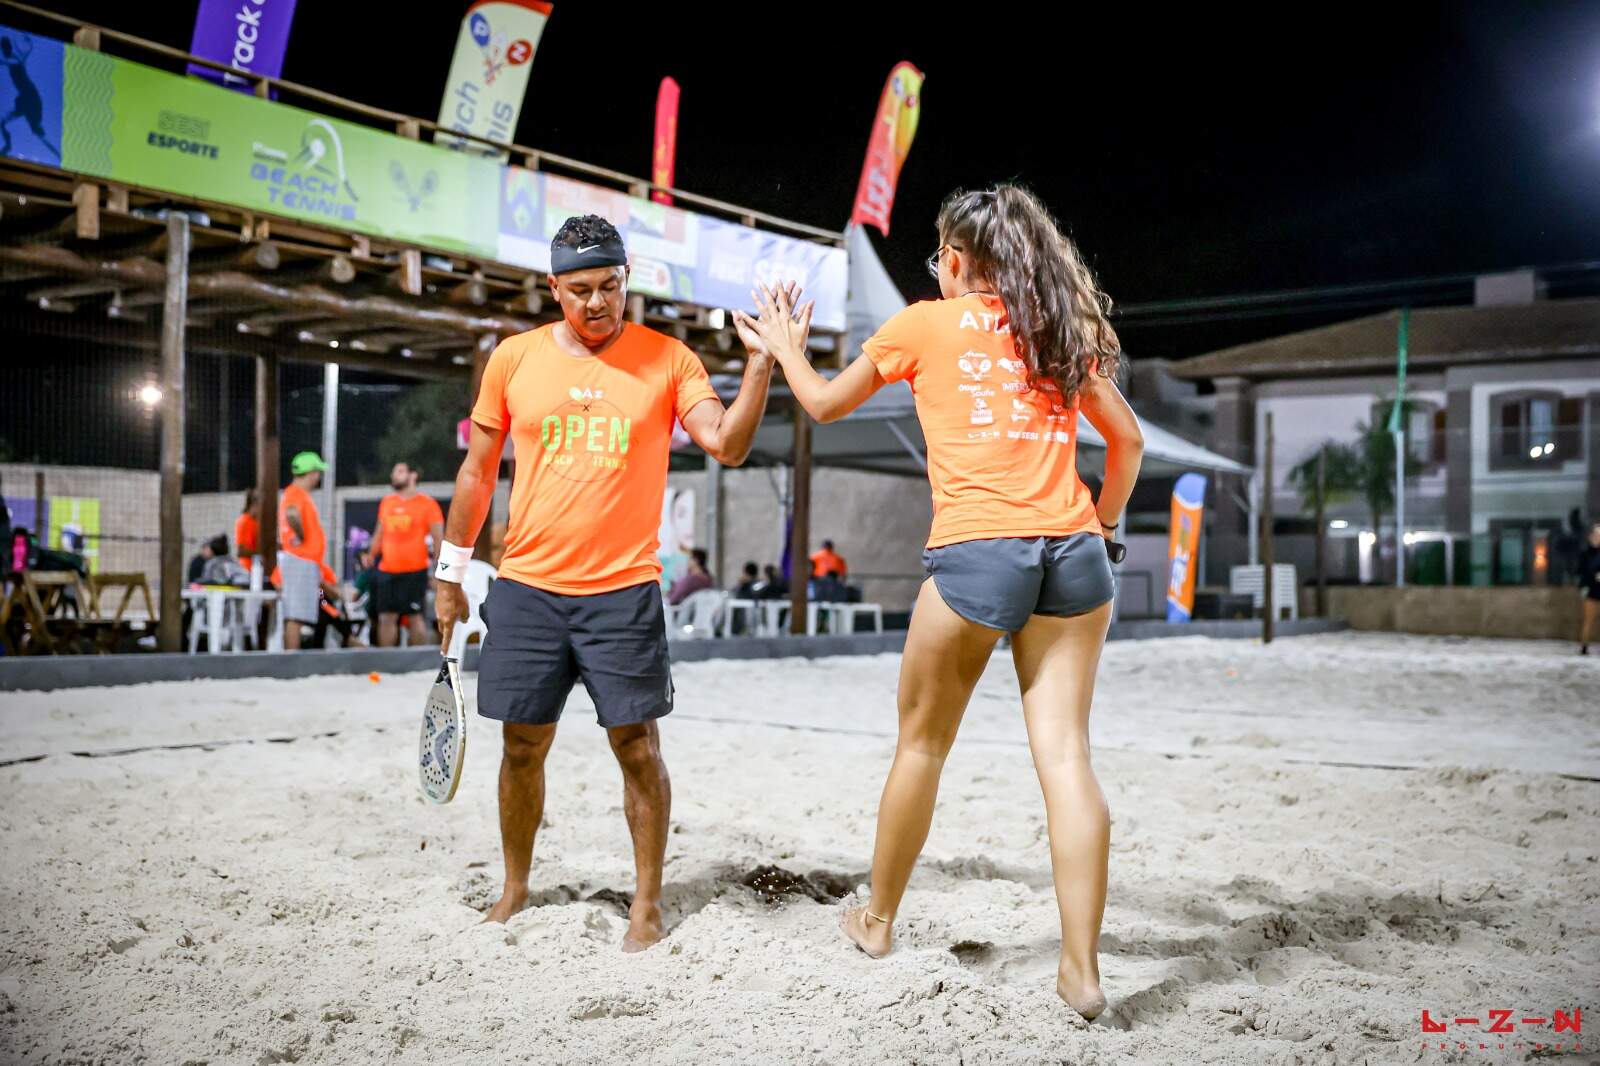 Estadual de beach tennis em Bonito reunirá 120 atletas neste final de semana 